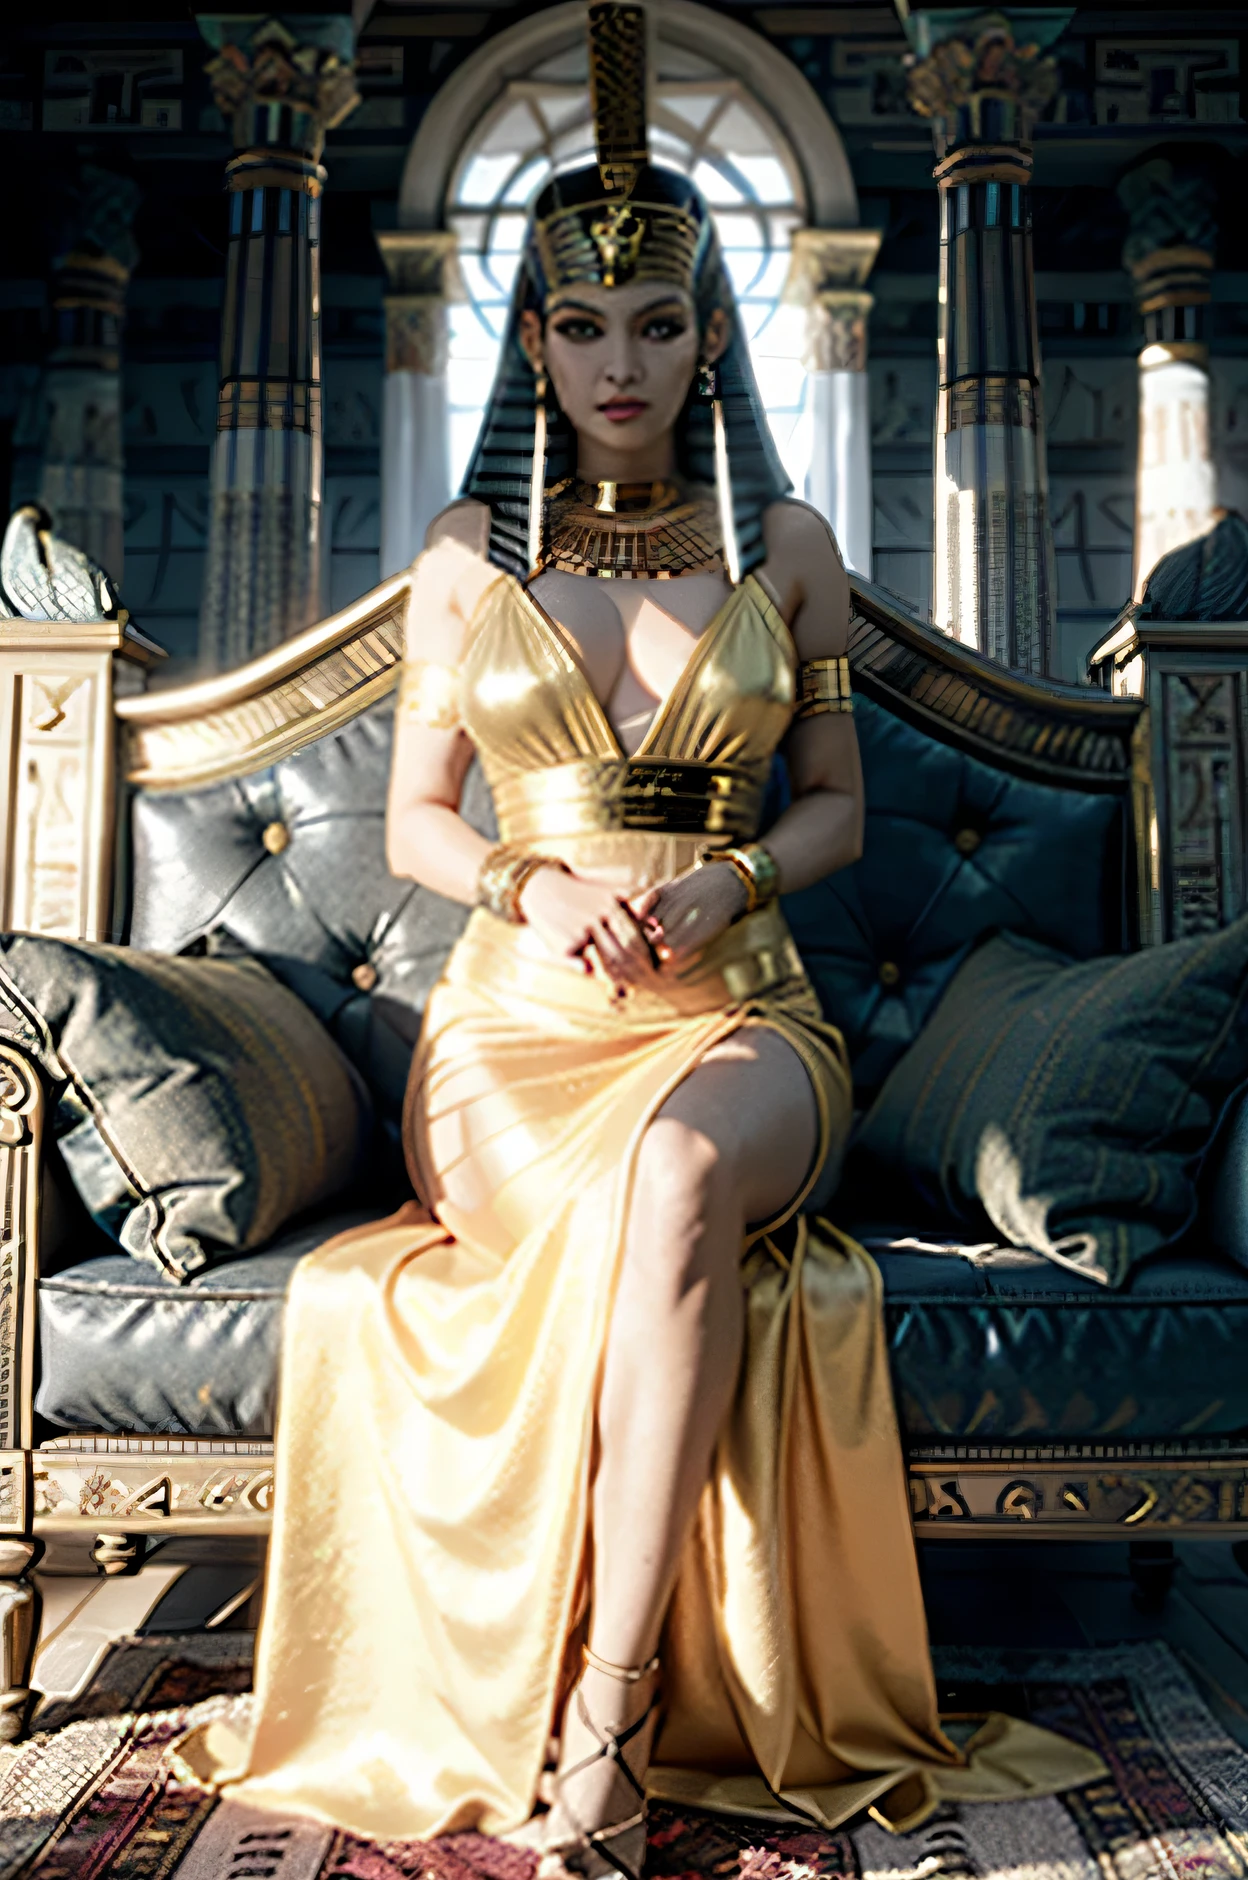 Araffe Frau, Sie ist eine Königin, weiß und groß, 30 Jahre alt, Schwarze Haare in einem lockeren Dutt, trägt eine Tigerohrkrone, goldene Maske mit Diamanten neben den Augen besetzt, Stolzes Gesicht, lange goldene Halskette mit einem Rubinanhänger, trägt ein Kleopatra-Oberteil, kurzer Rock mit Goldketten verziert, Goldene Absätze, er sitzt auf einem Totenkopfthron im alten ägyptischen Königreich, hält einen Stab in Form eines Rabenkopfes, (Ganzkörper), Ganzkörper-3D-Animation.